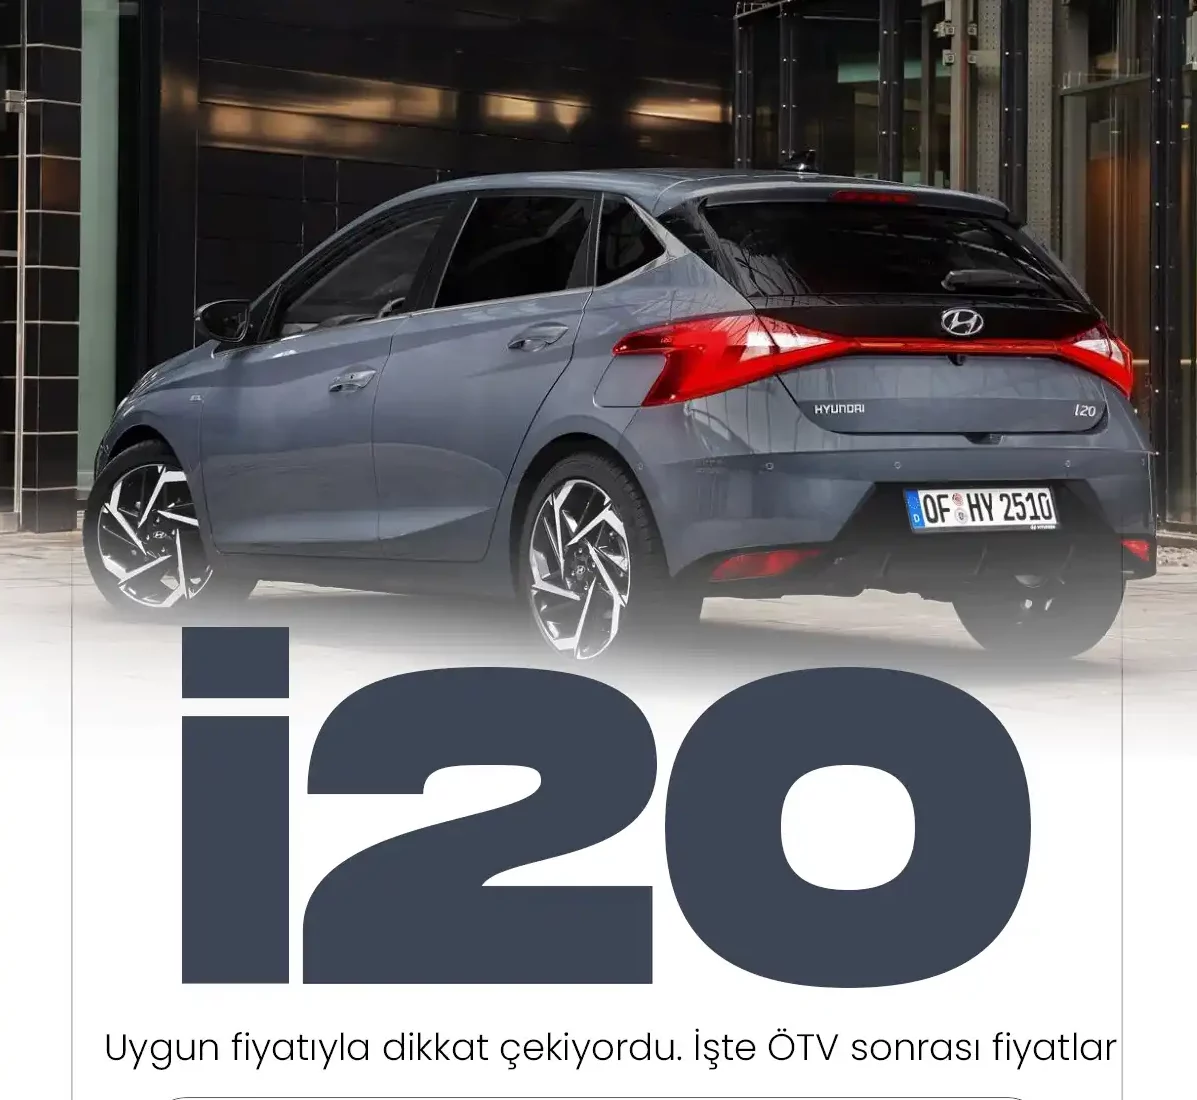 Hyundai i20 fiyatları ÖTV matrah düzenlemesi sonrası ne durumda?